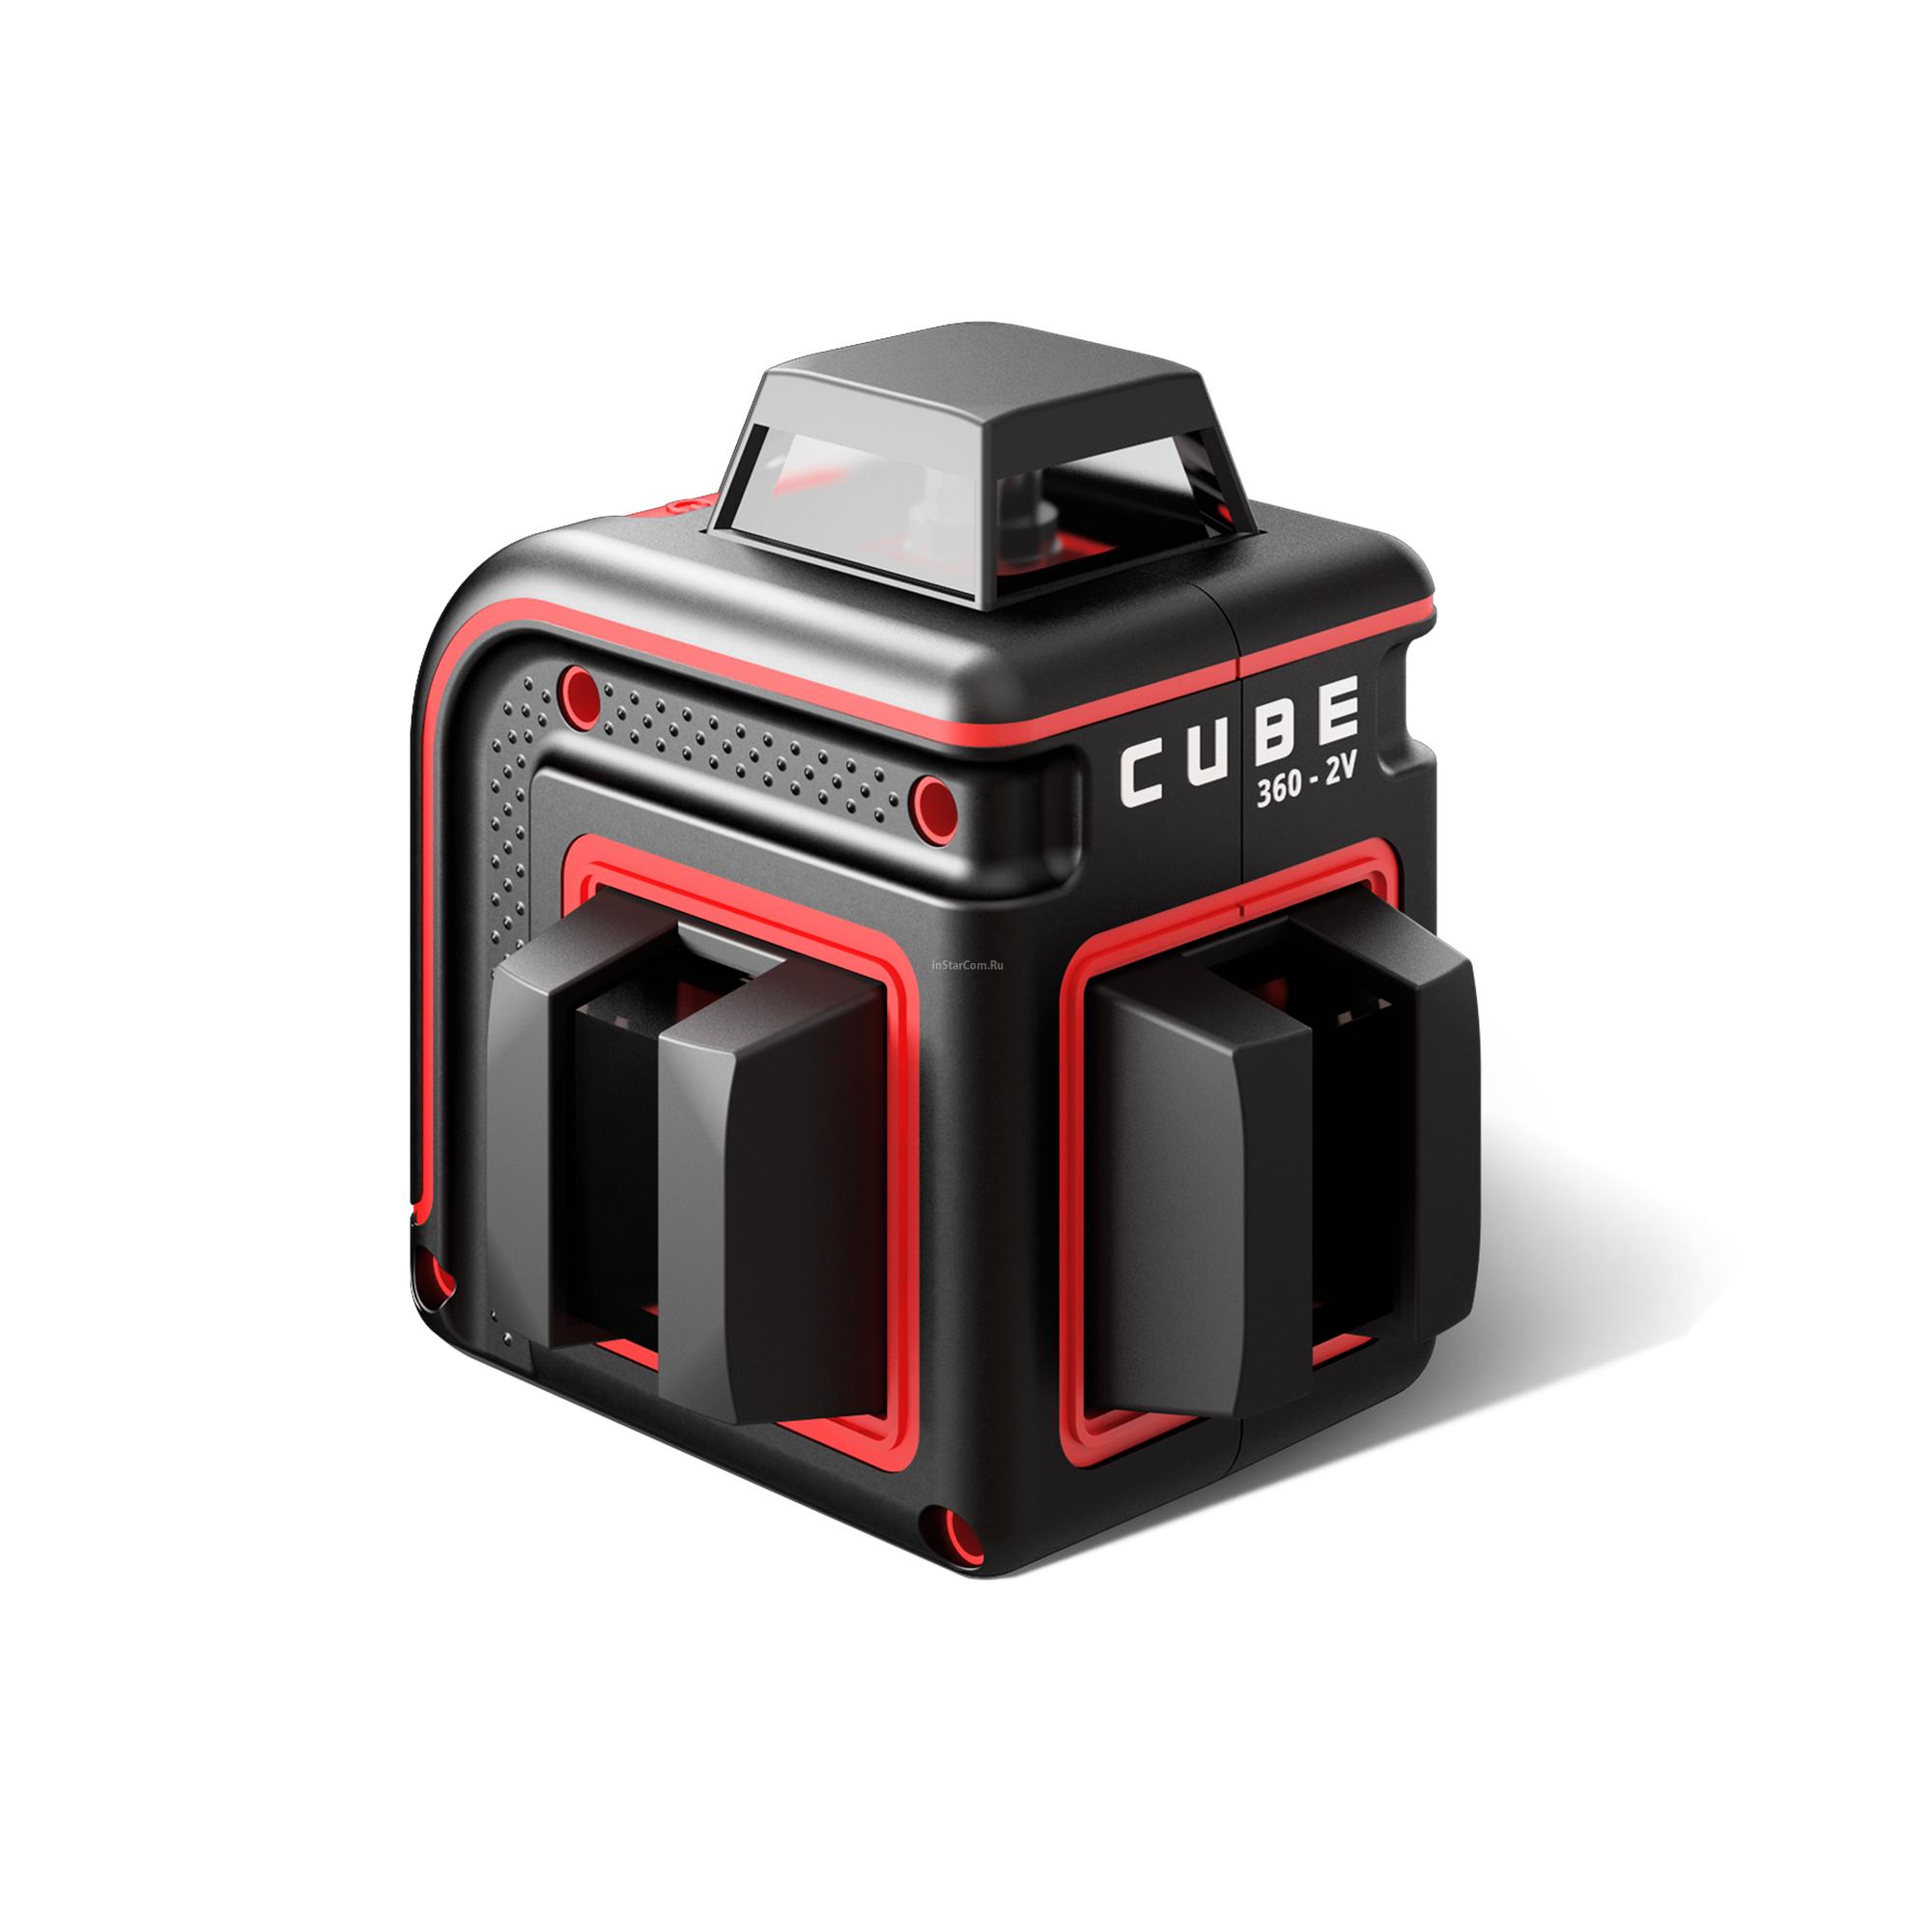 Лазерный уровень cube 360 professional edition. Нивелир лазерный ada Cube 360 professional Edition. Лазерный уровень ada instruments Cube 3-360 Green Ultimate Edition (а00569). Лазерный уровень Cube 360-2v. Уровень лазерный ada Cube 2-360 professional Edition.